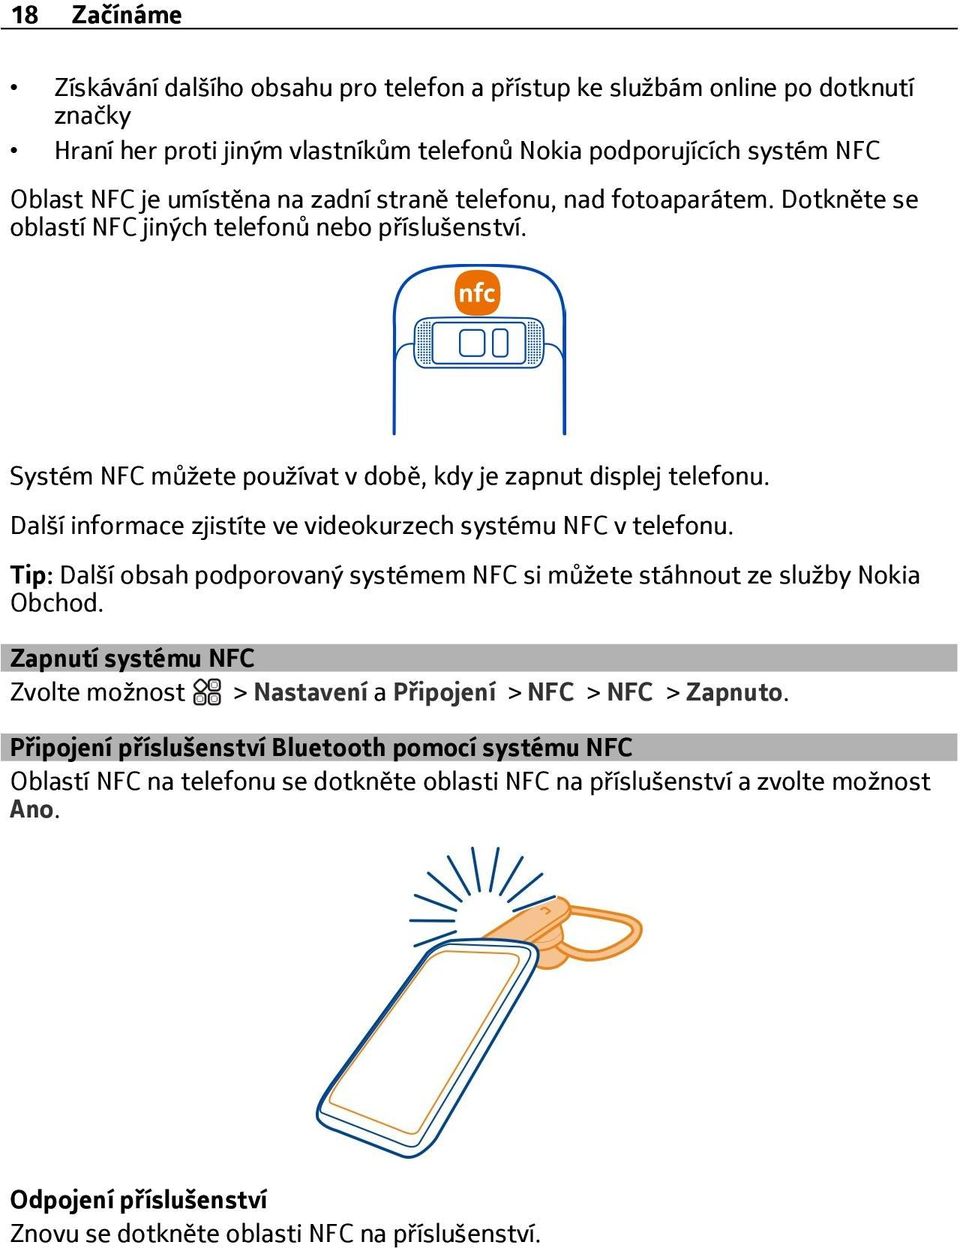 Další informace zjistíte ve videokurzech systému NFC v telefonu. Tip: Další obsah podporovaný systémem NFC si můžete stáhnout ze služby Nokia Obchod.